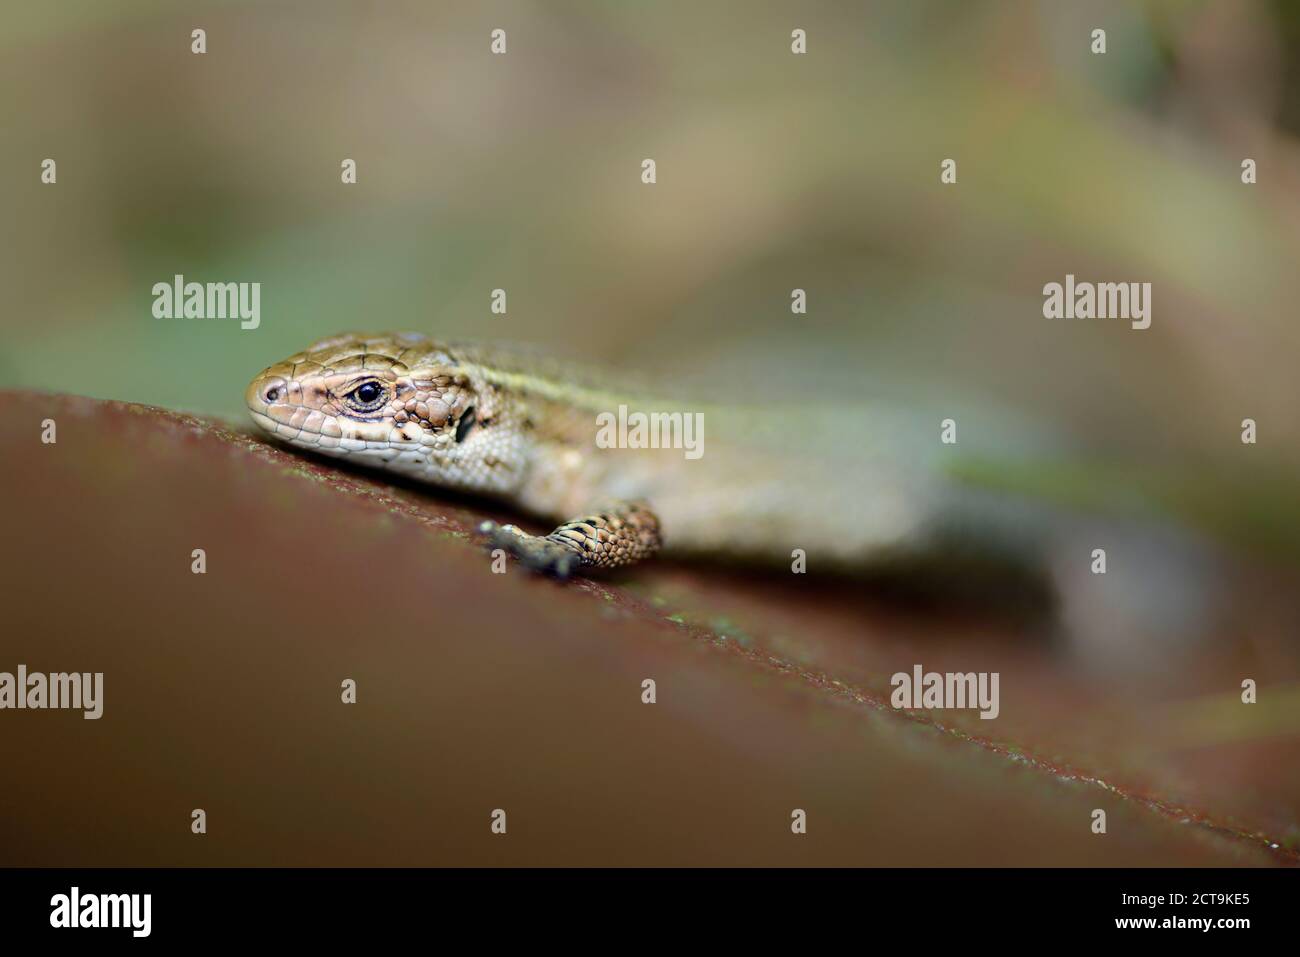 Common lizard, Zootoca vivipara Stock Photo